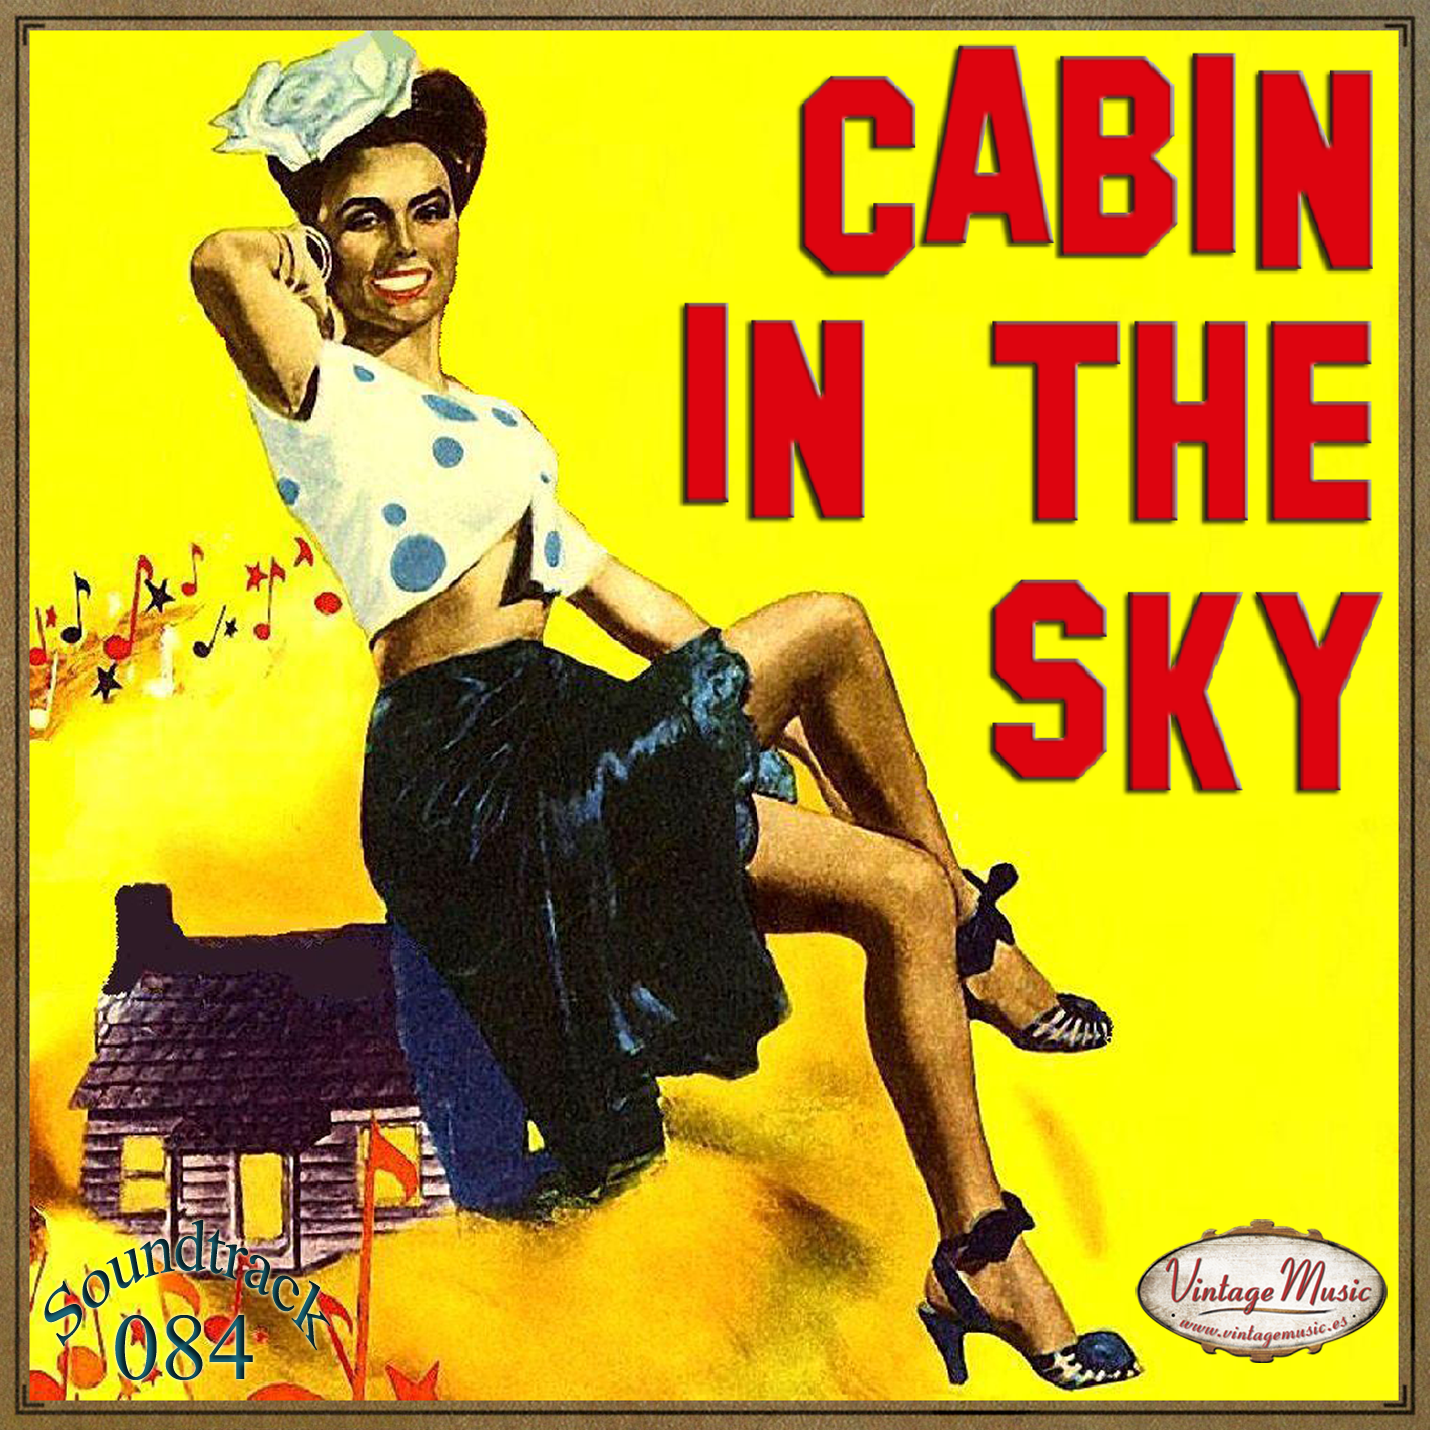 Cabin In The Sky (Colección Soundtrack - #84)